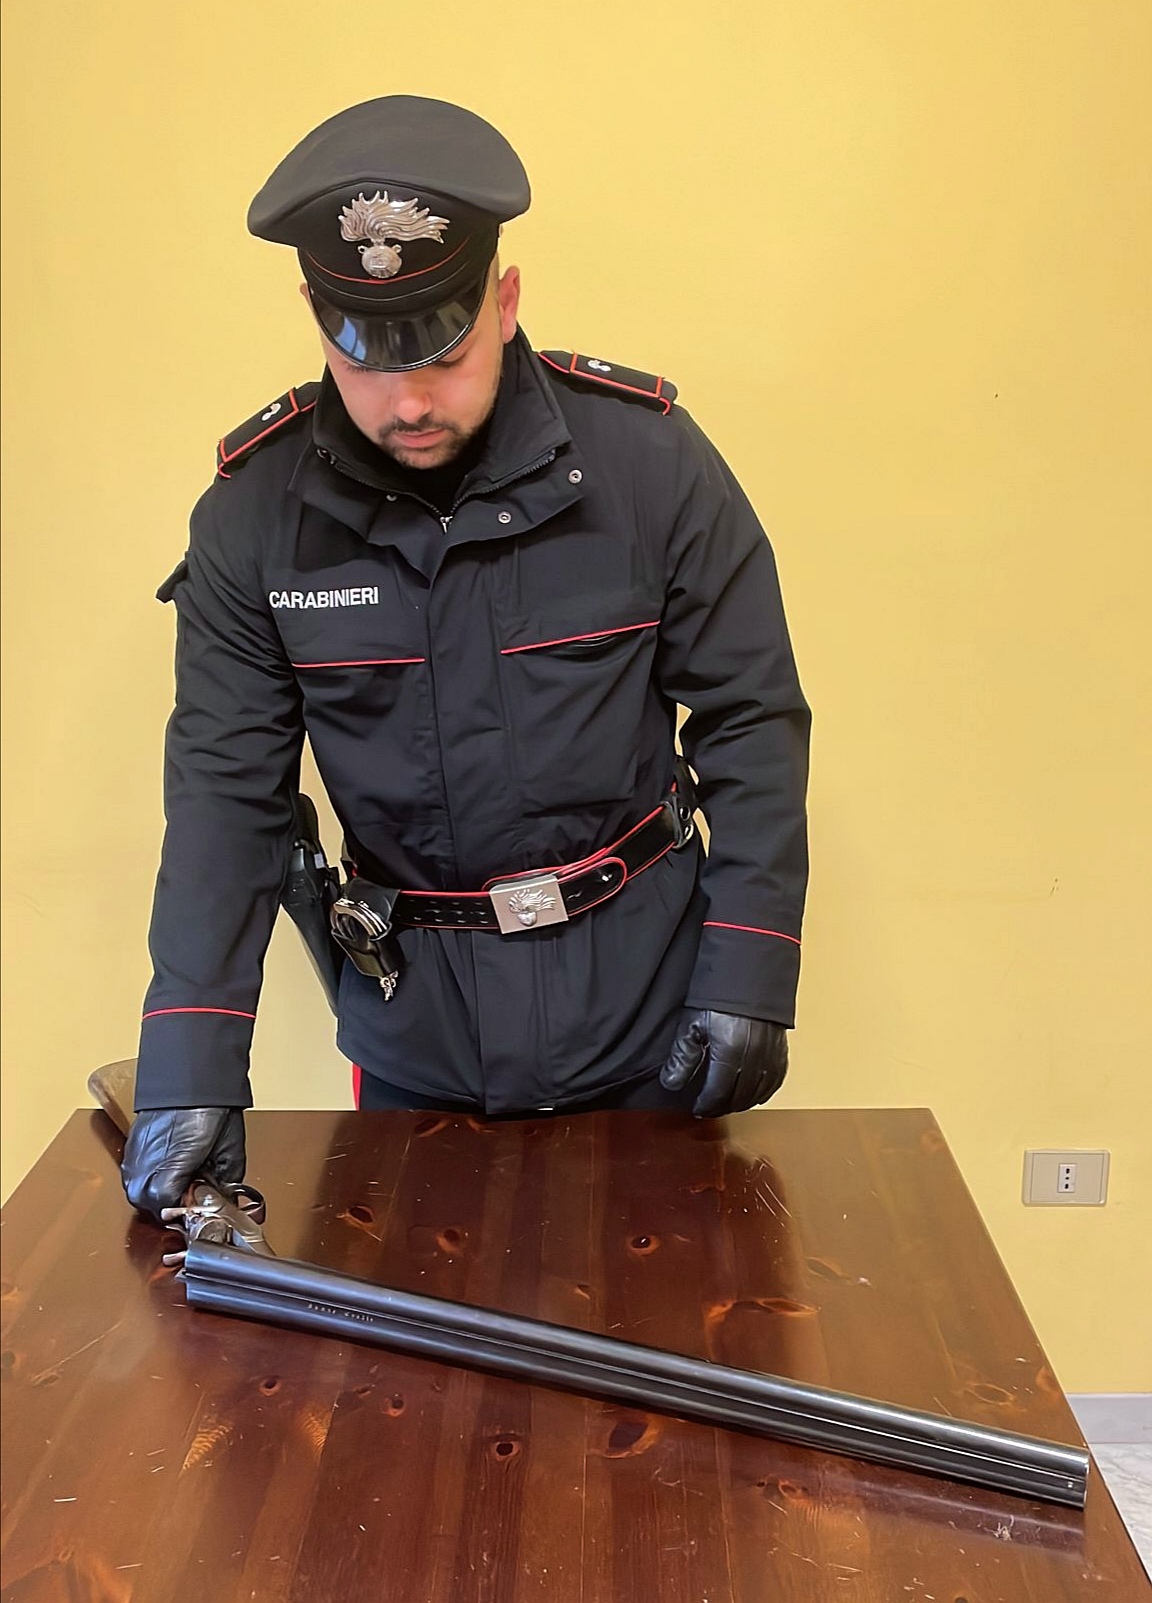 Controlli dei Carabinieri in Valfortore: una persona denunciata e un fucile sequestrato